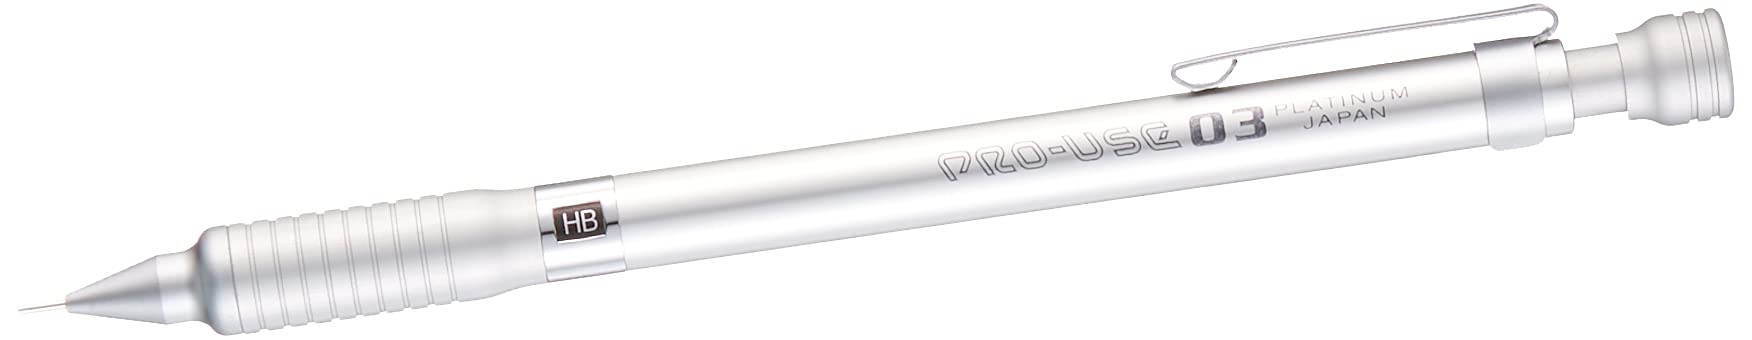 白金钢笔专业用途银色自动铅笔 0.3 毫米 - MSD-1000A#9 型号